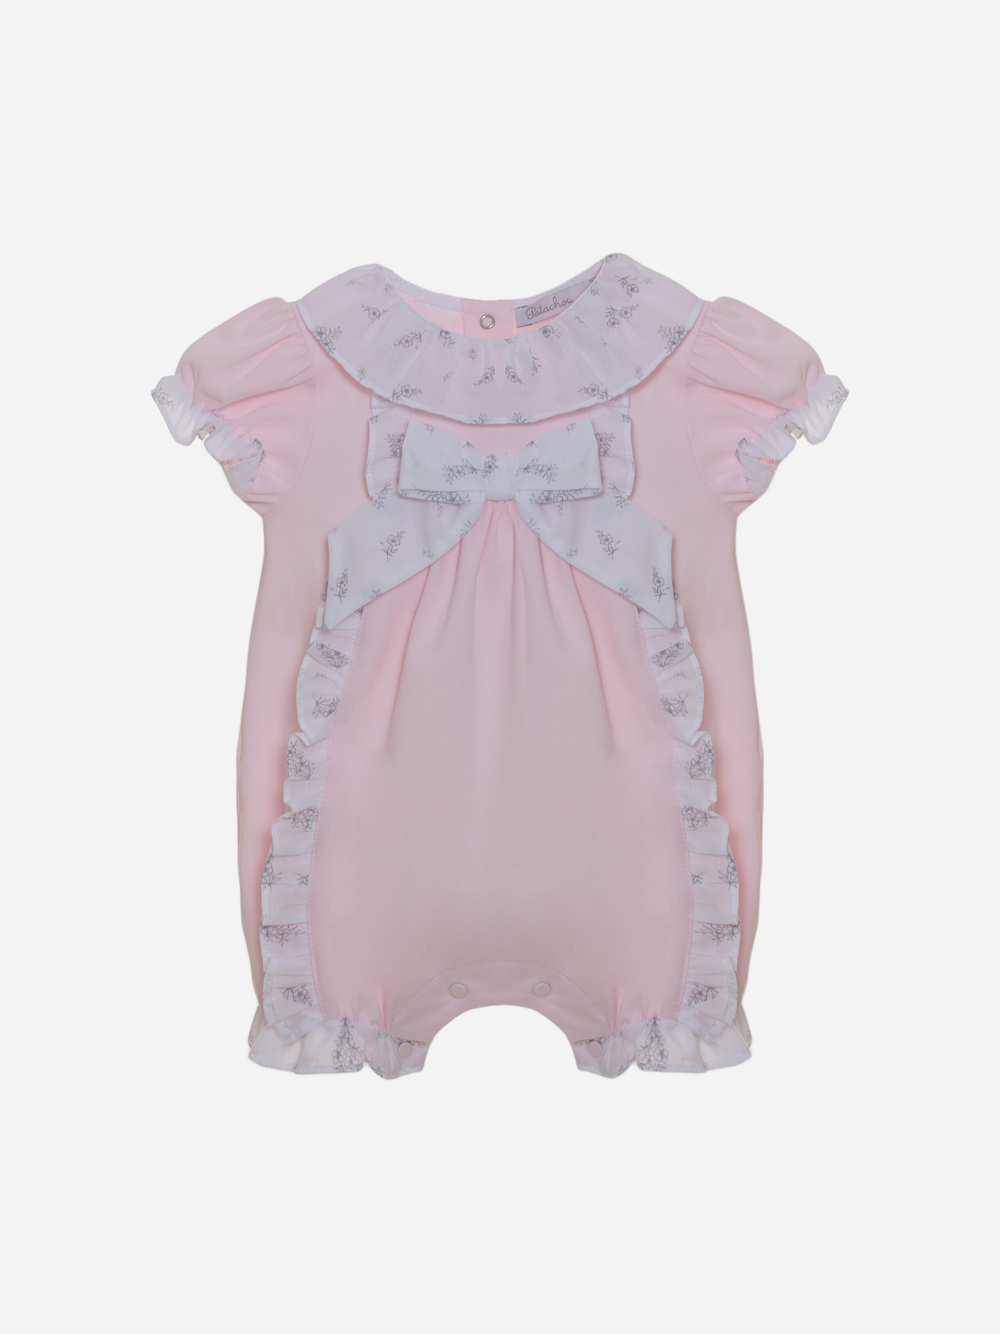 Babygrow rosa de bebé menina com estampado exclusivo